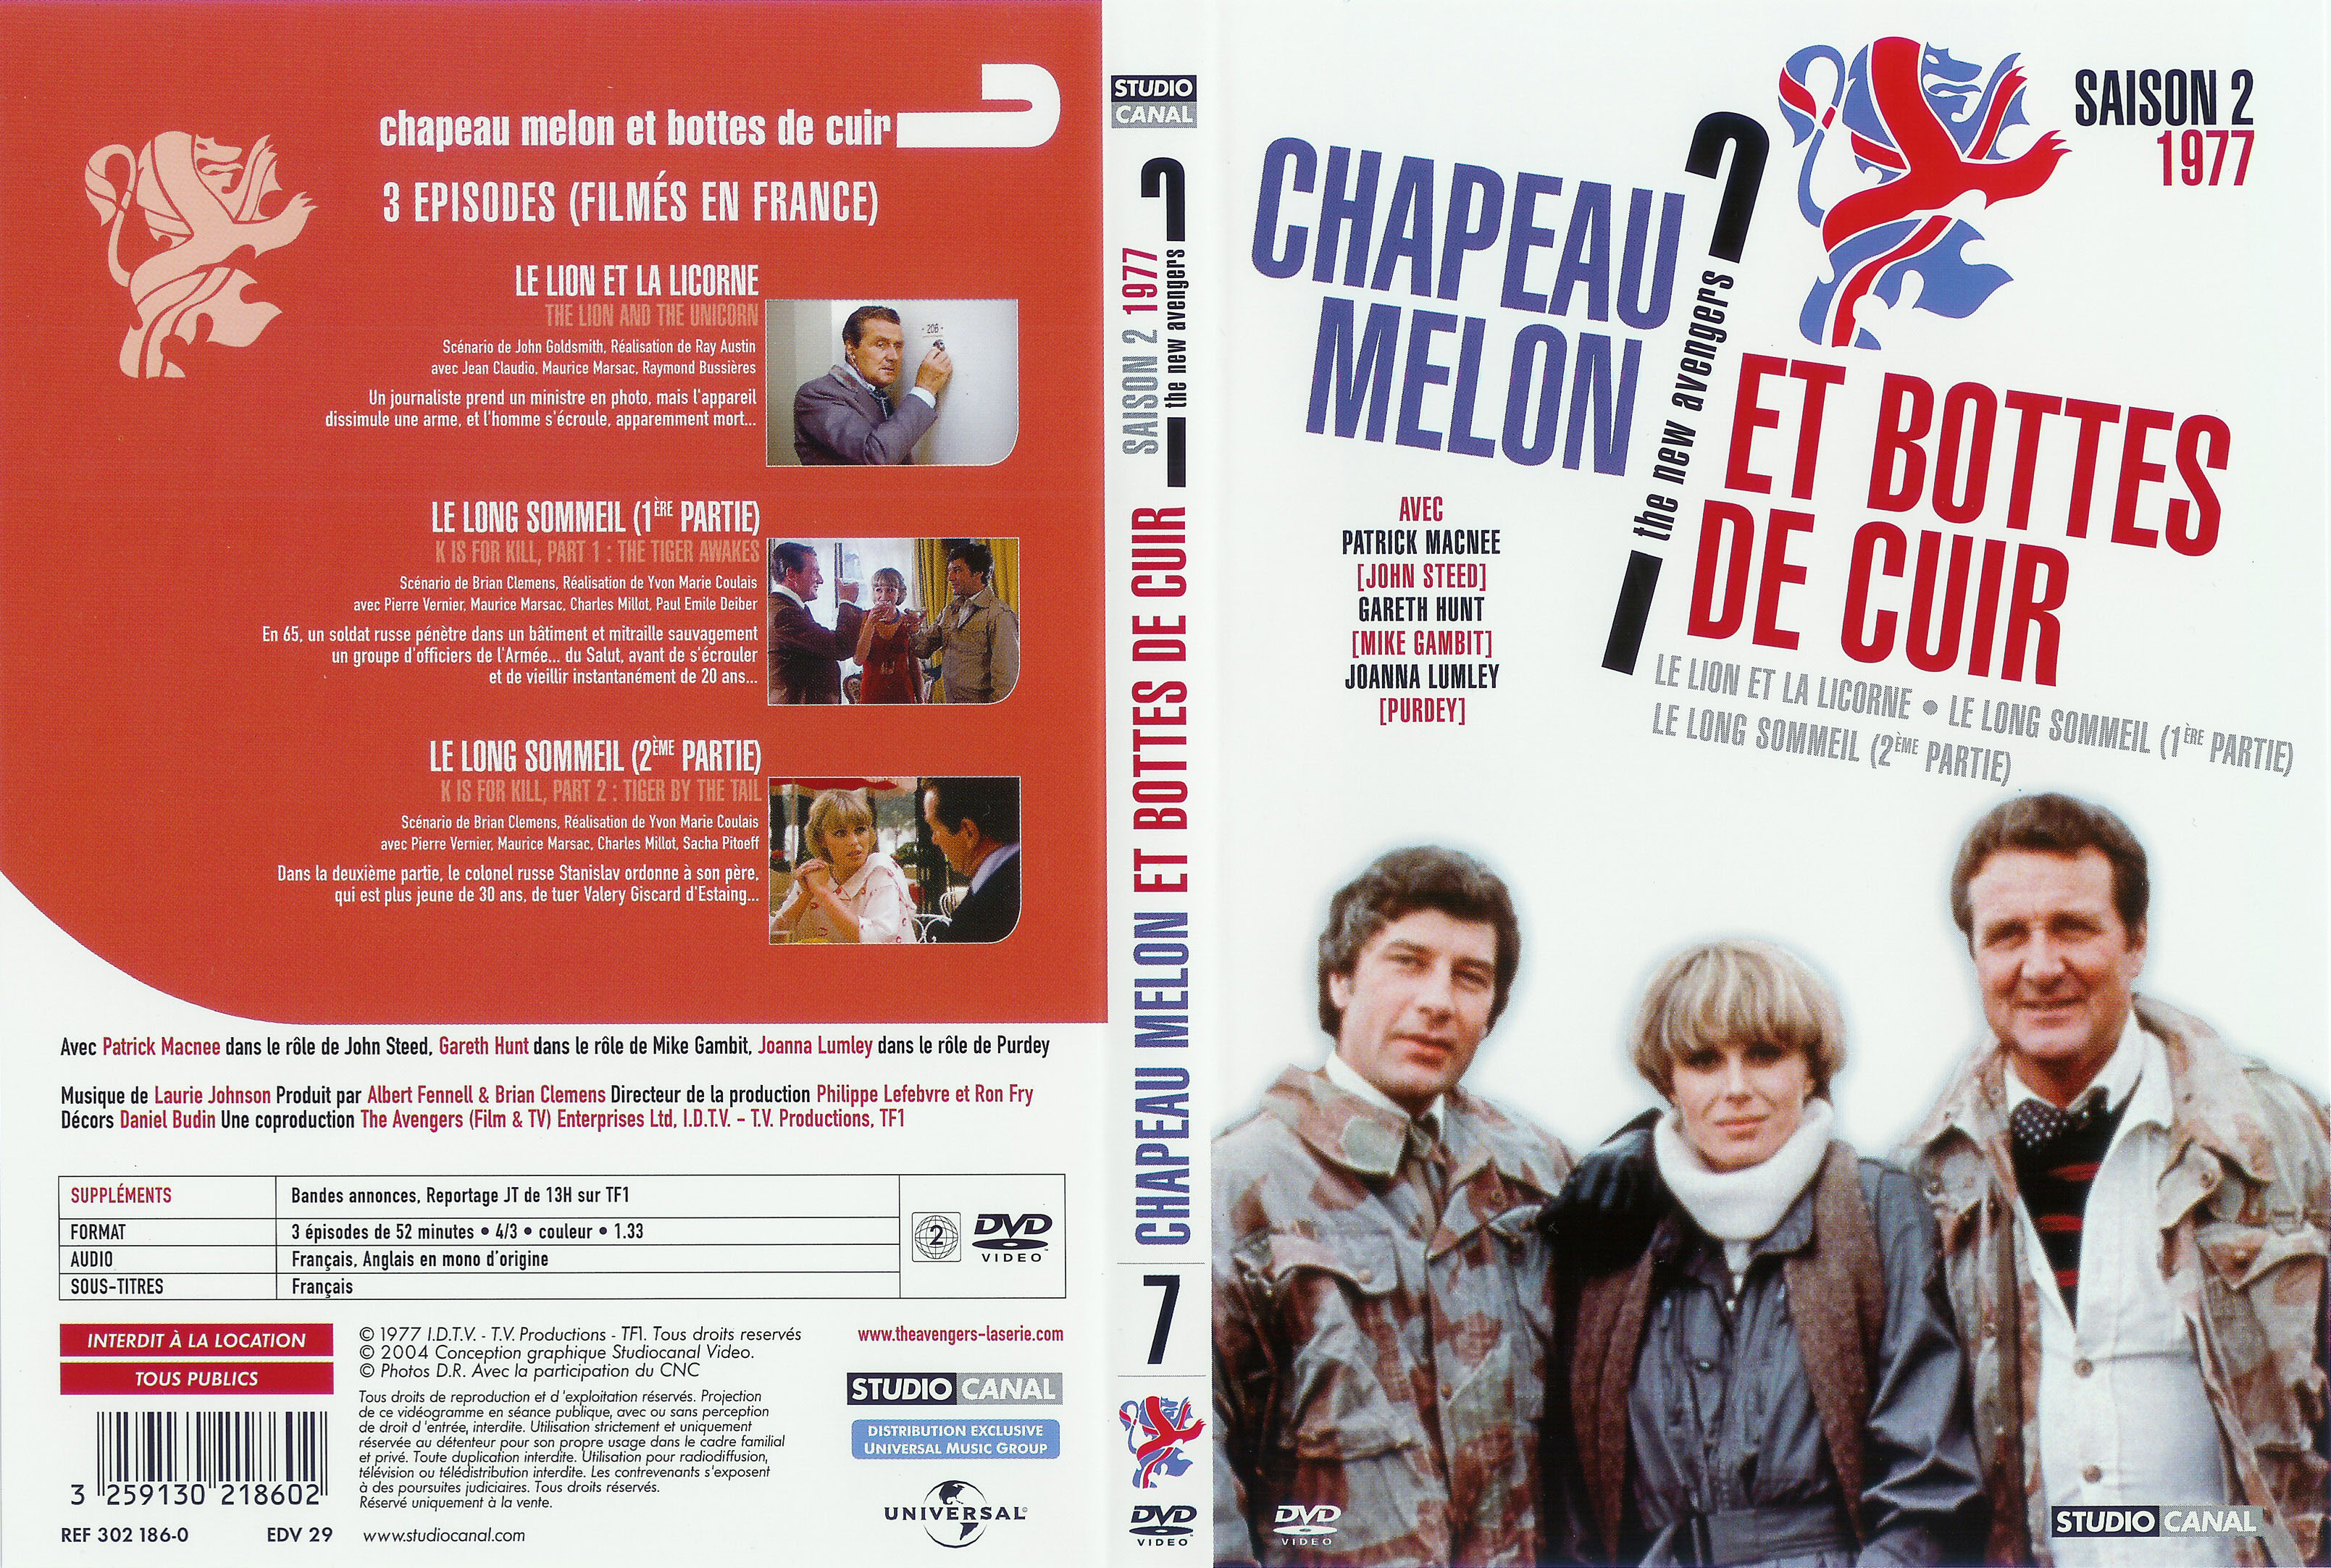 Jaquette DVD Chapeau melon et bottes de cuir 1977 vol 3